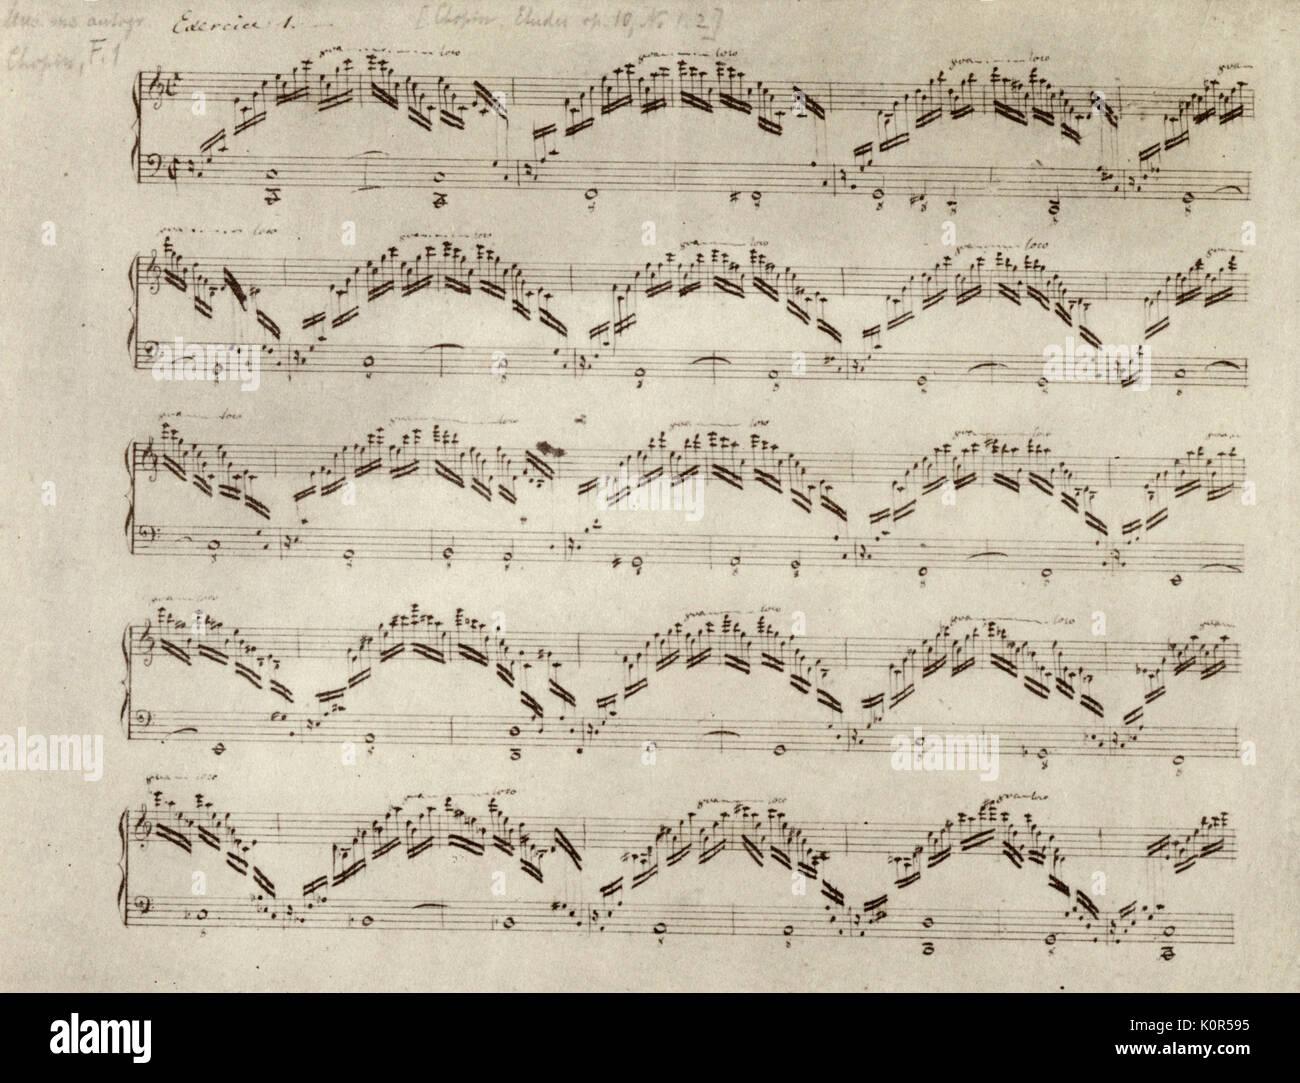 Frederic Chopin scritto a mano manoscritto di Op10 in C Major. Compositore polacco 1 Marzo 1810 - 17 ottobre 1849. Cliente Foto Stock